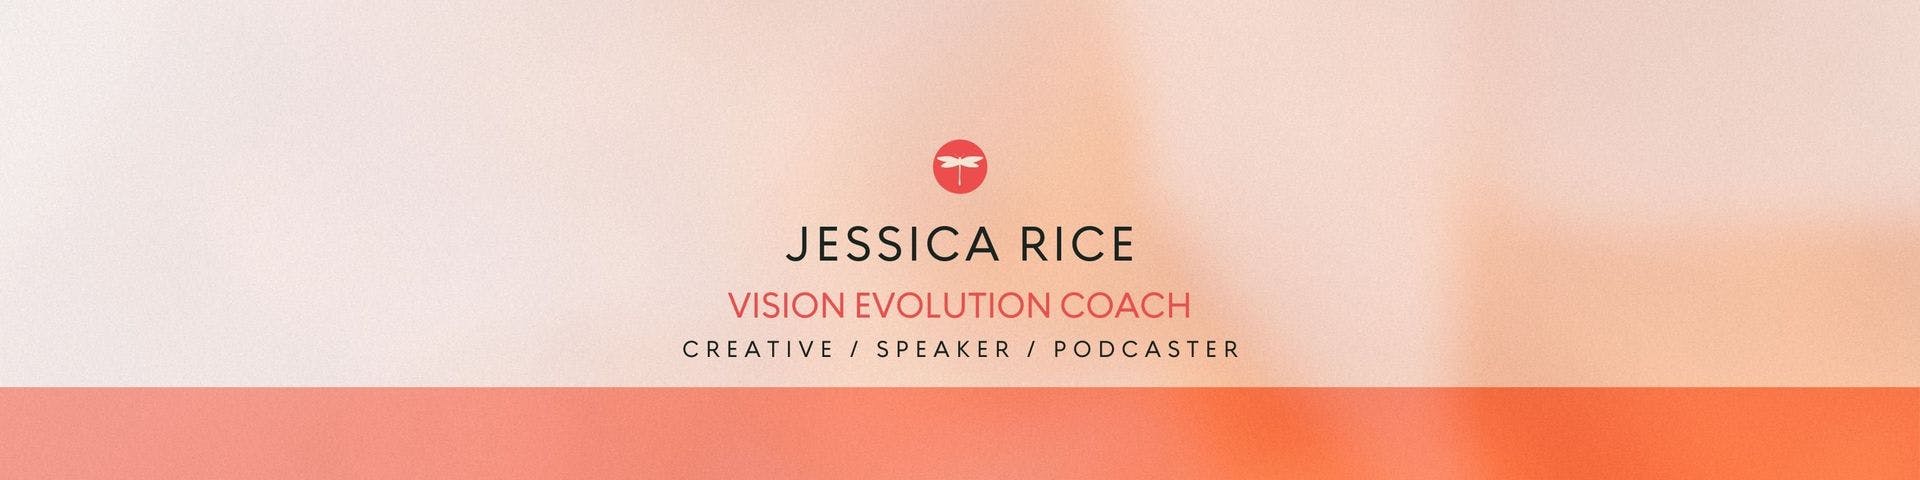 Jessica Rice header